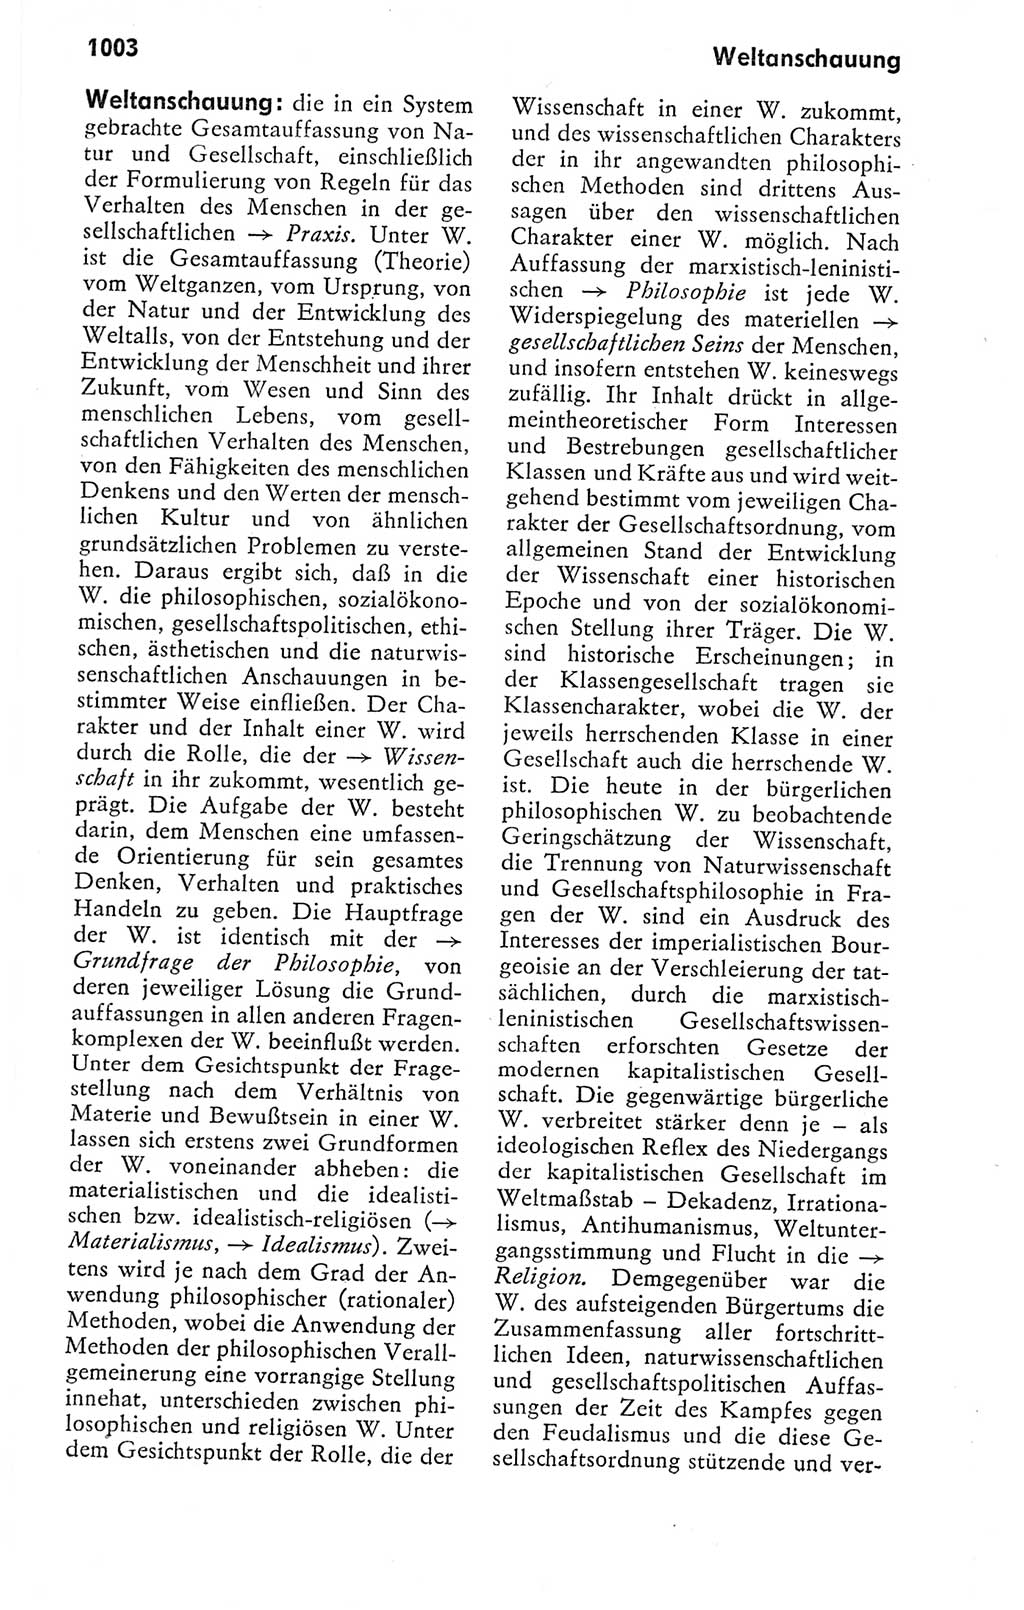 Kleines politisches Wörterbuch [Deutsche Demokratische Republik (DDR)] 1978, Seite 1003 (Kl. pol. Wb. DDR 1978, S. 1003)